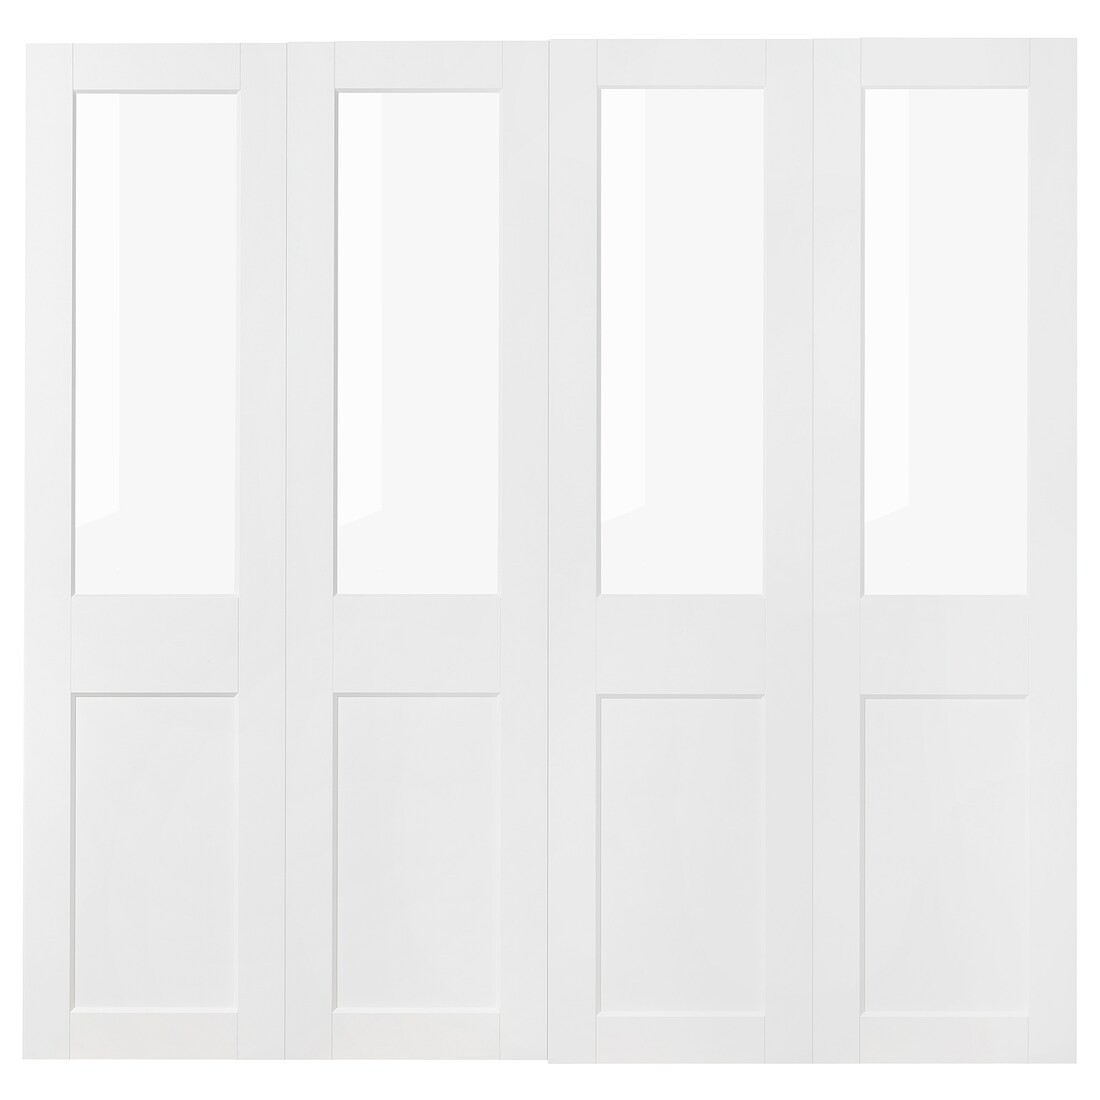 GRIMO Пара раздвижных дверей, стекло / белый, 200x201 см